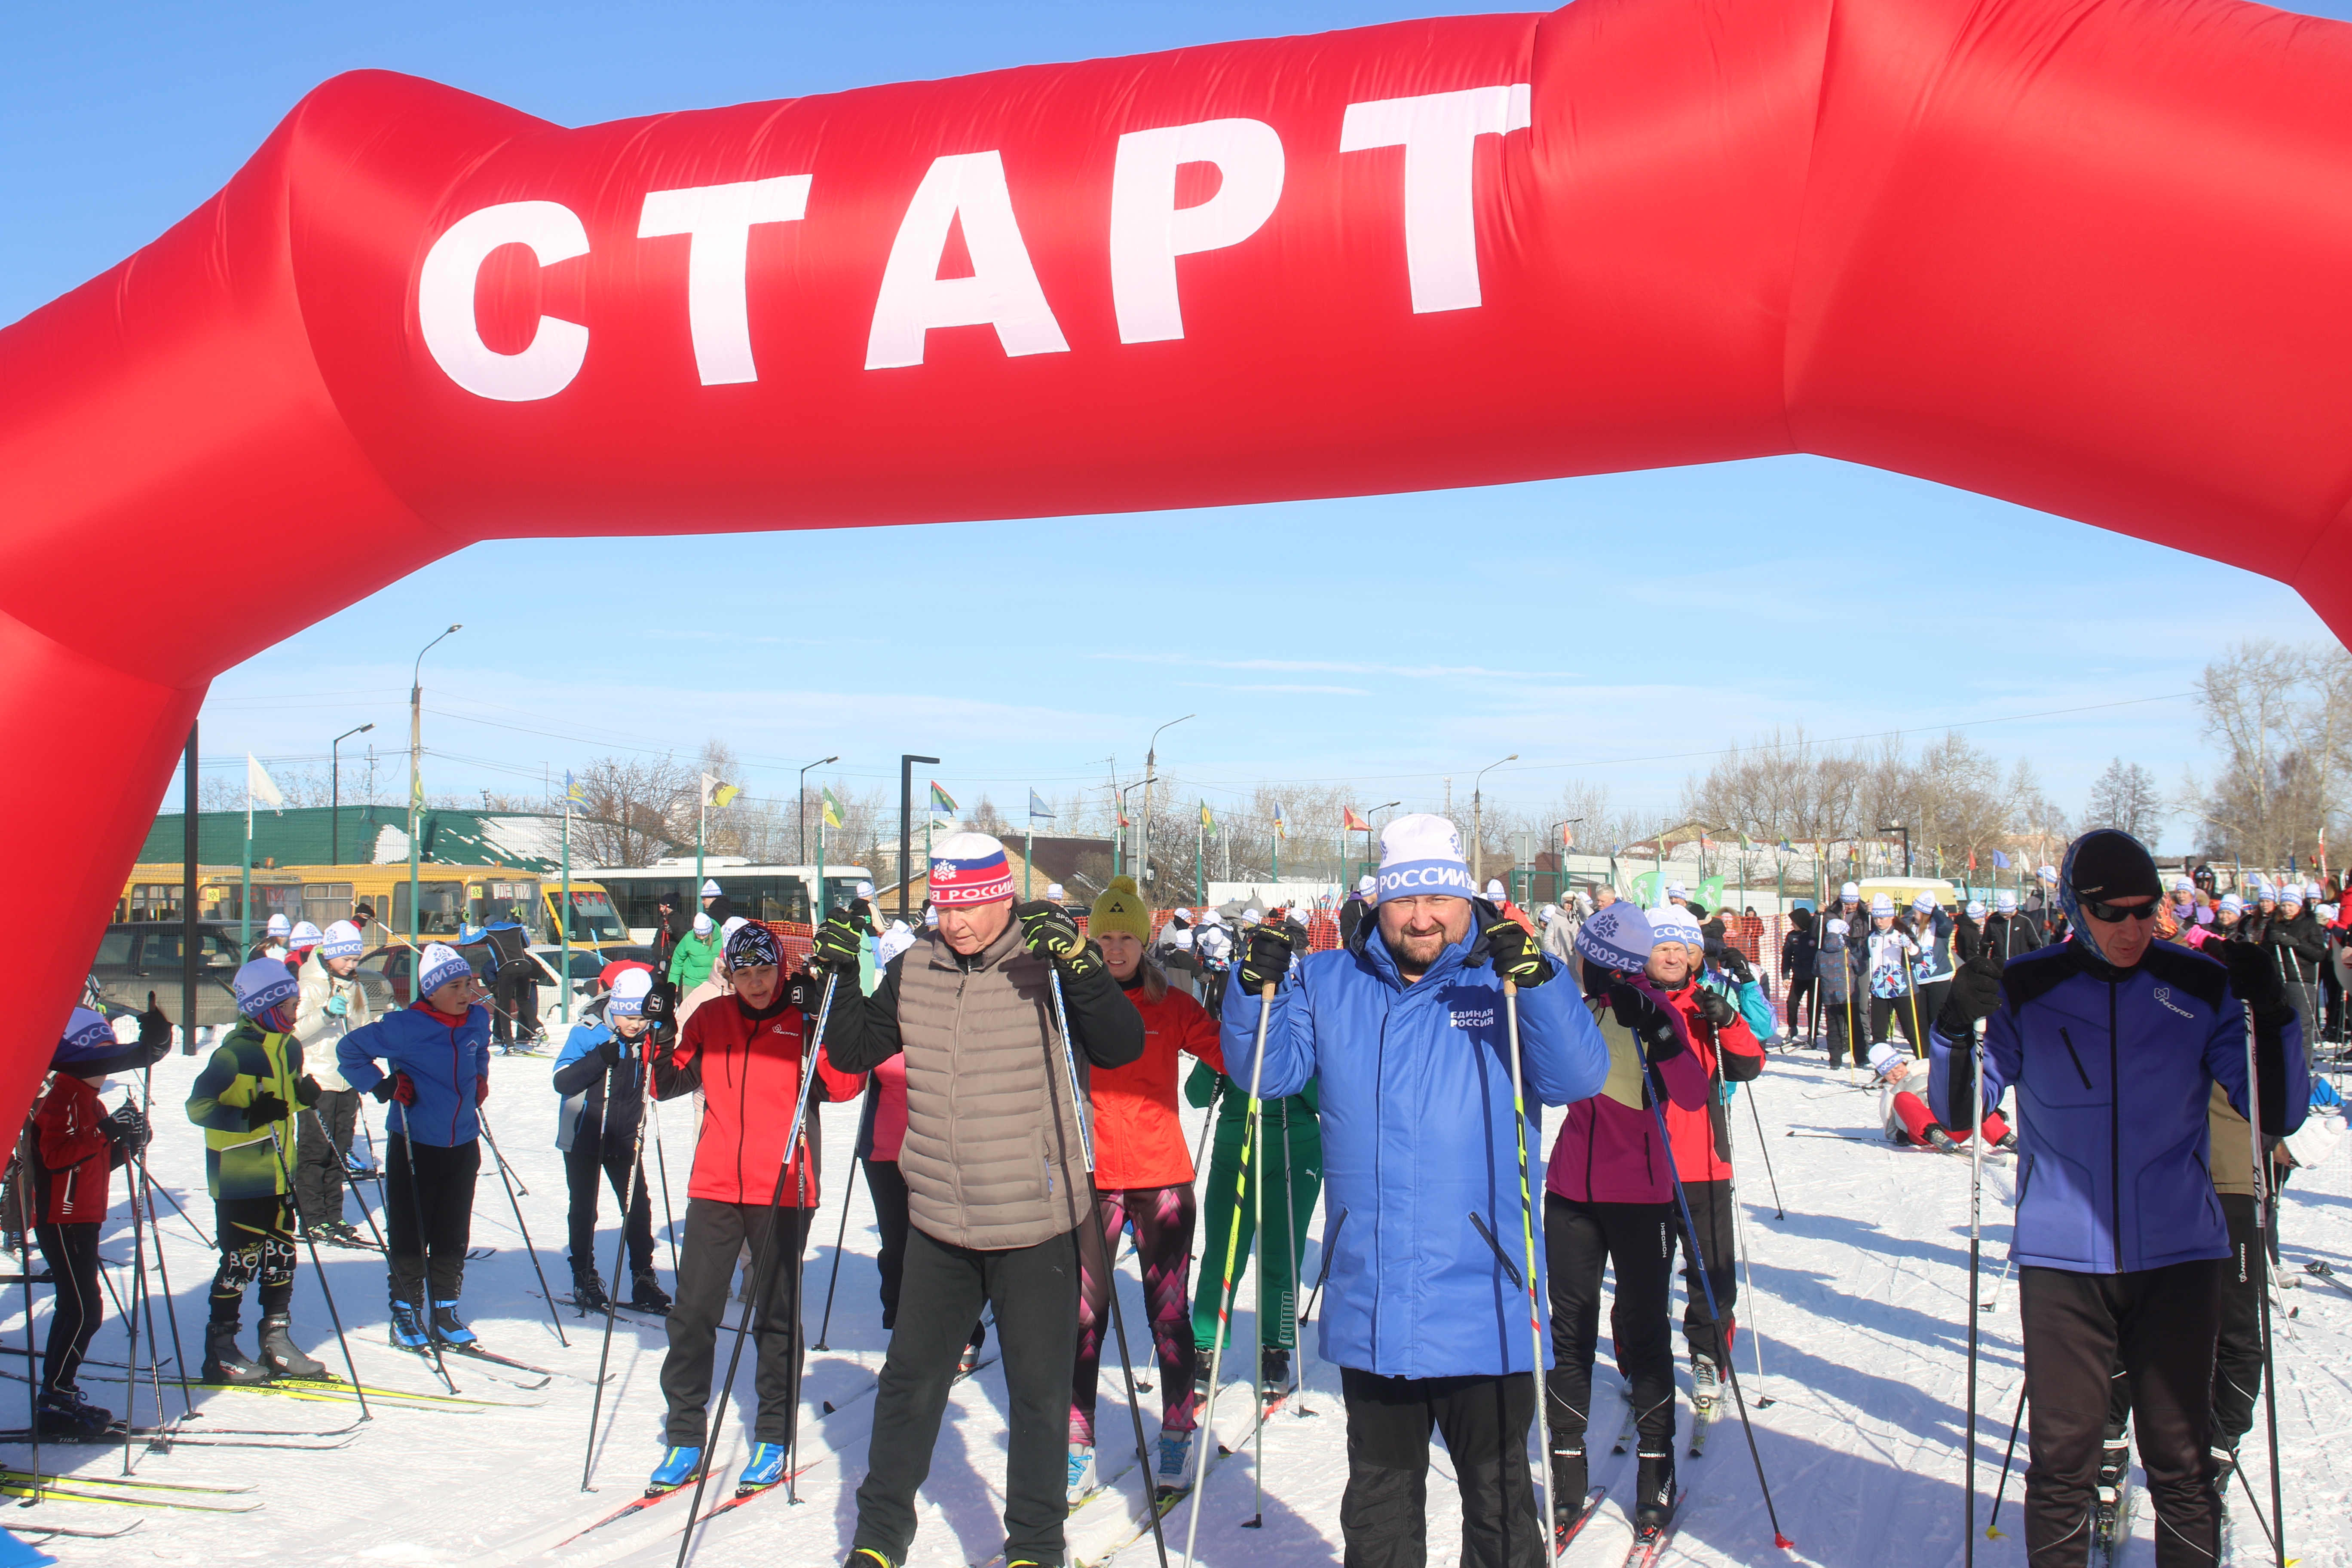  Ежегодная массовая гонка «Лыжня России»